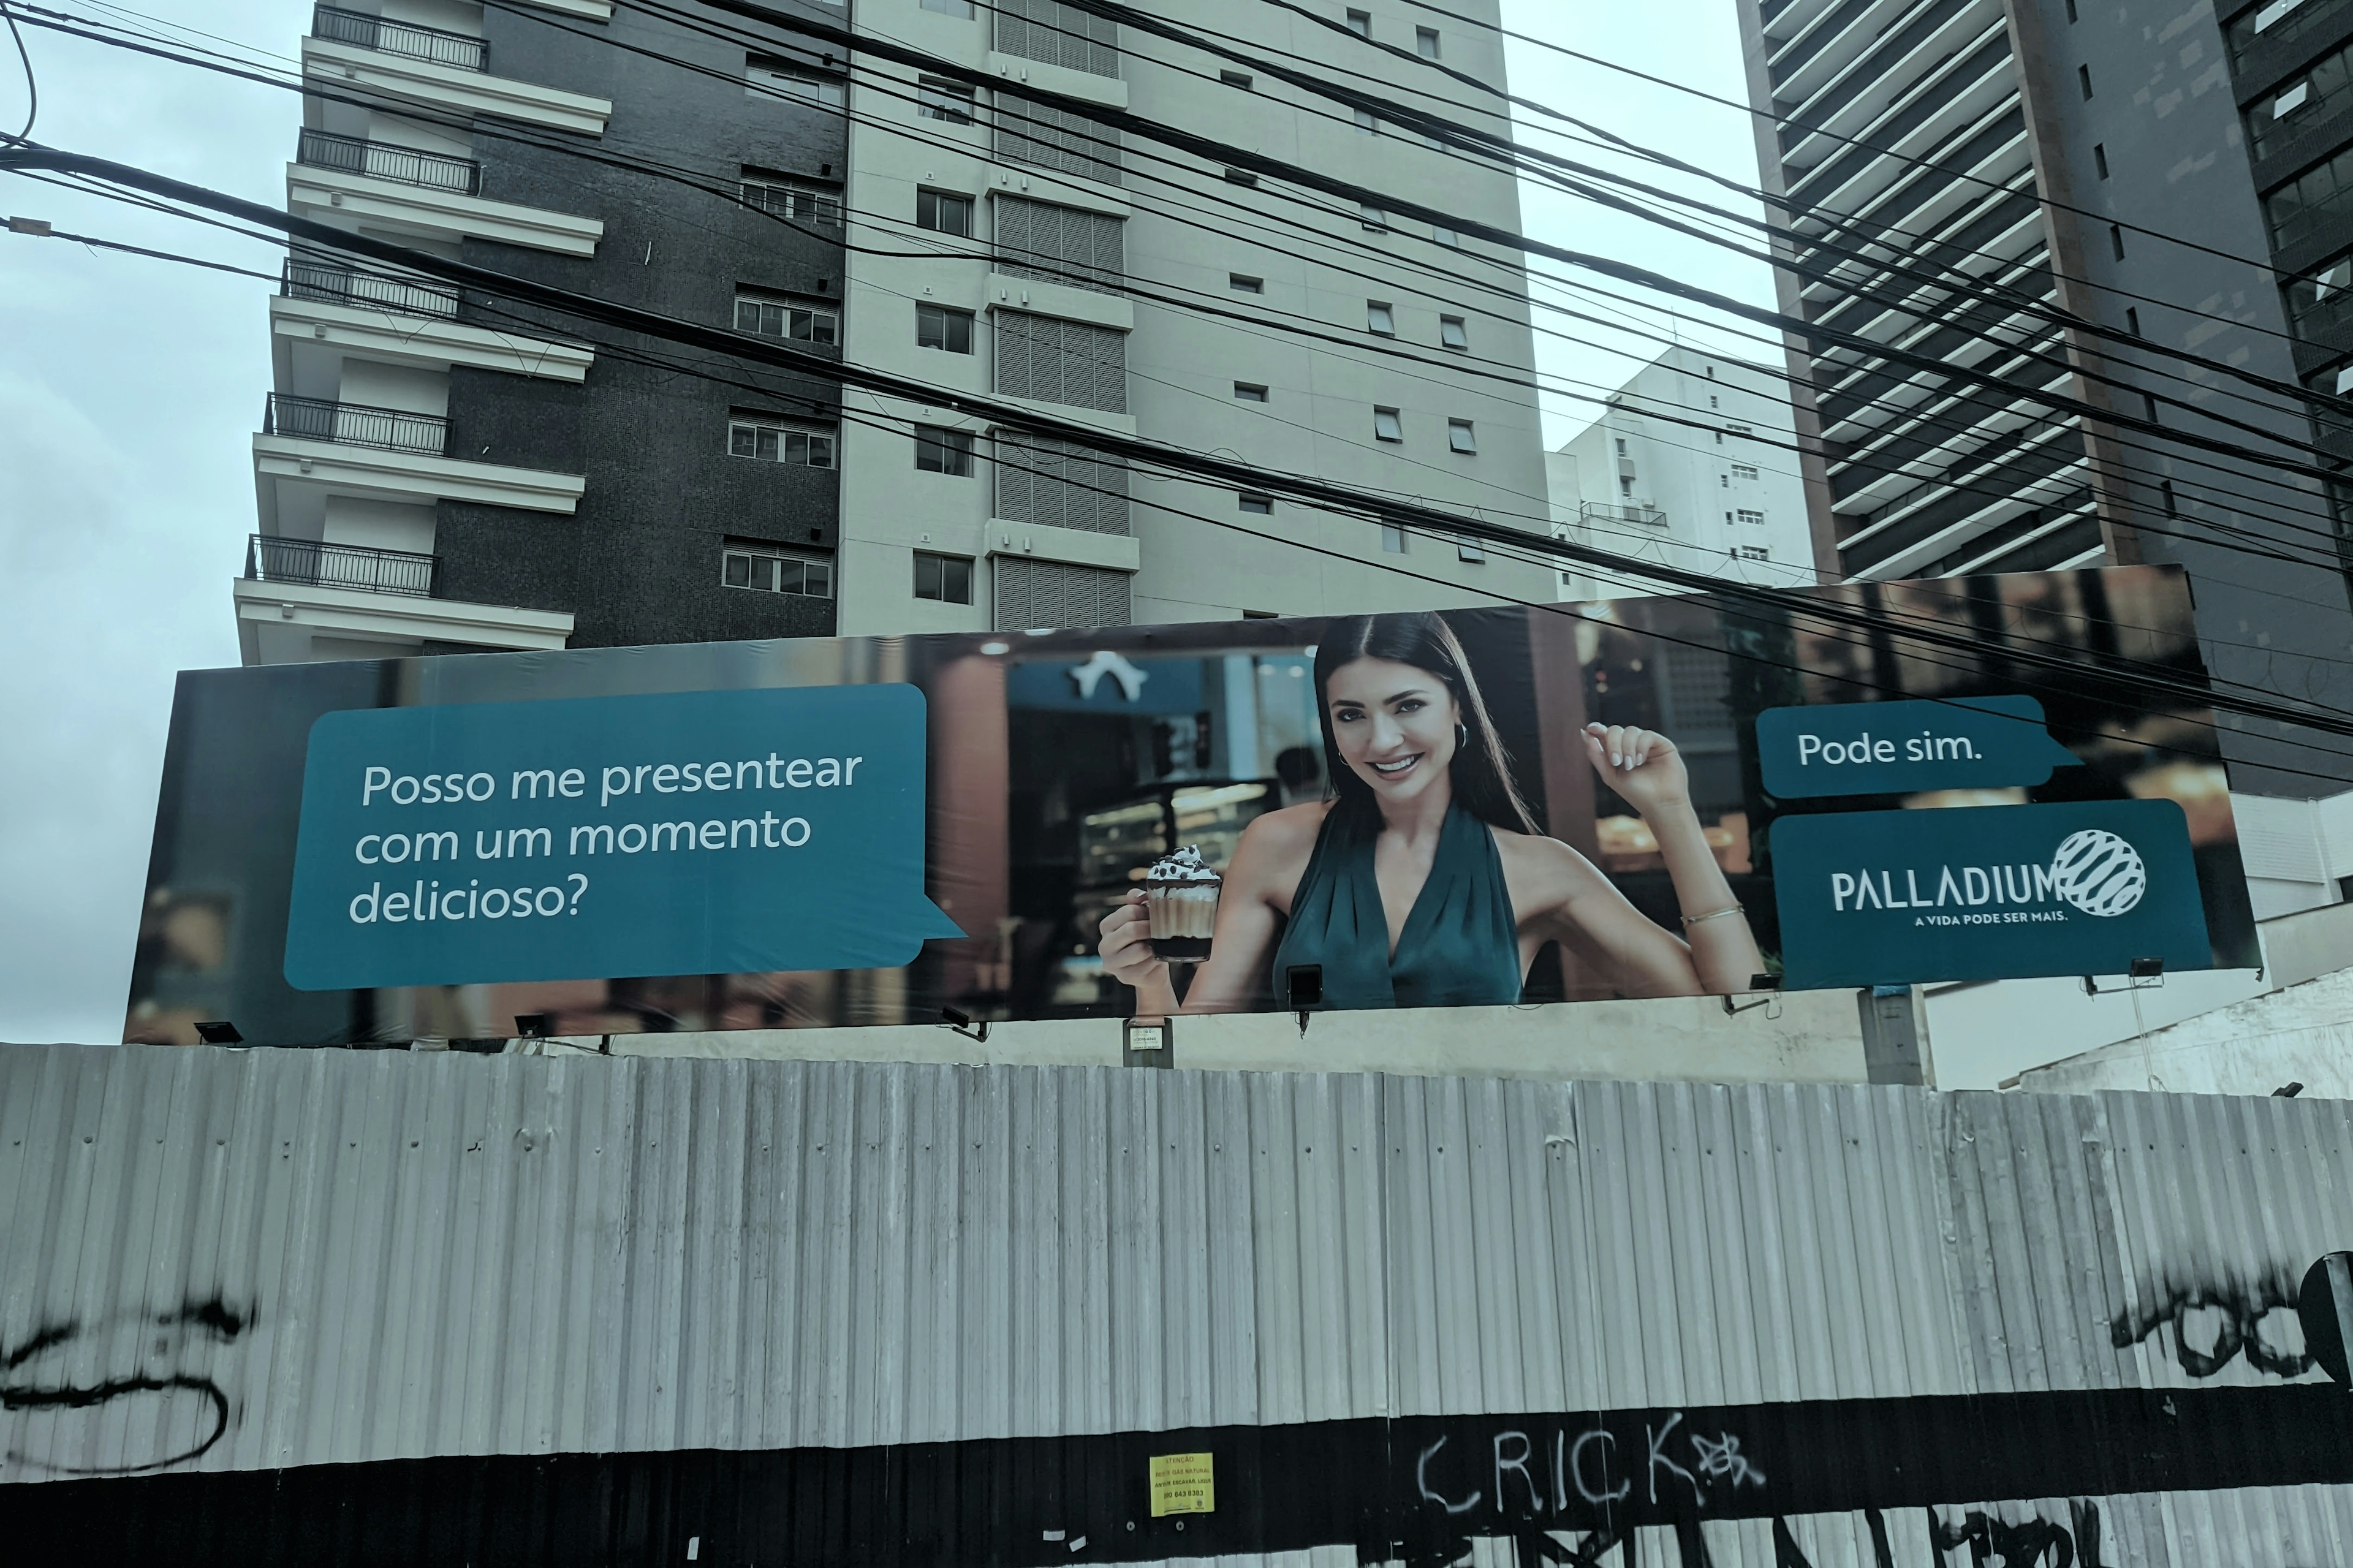 WhatsApp depicted on a billboard